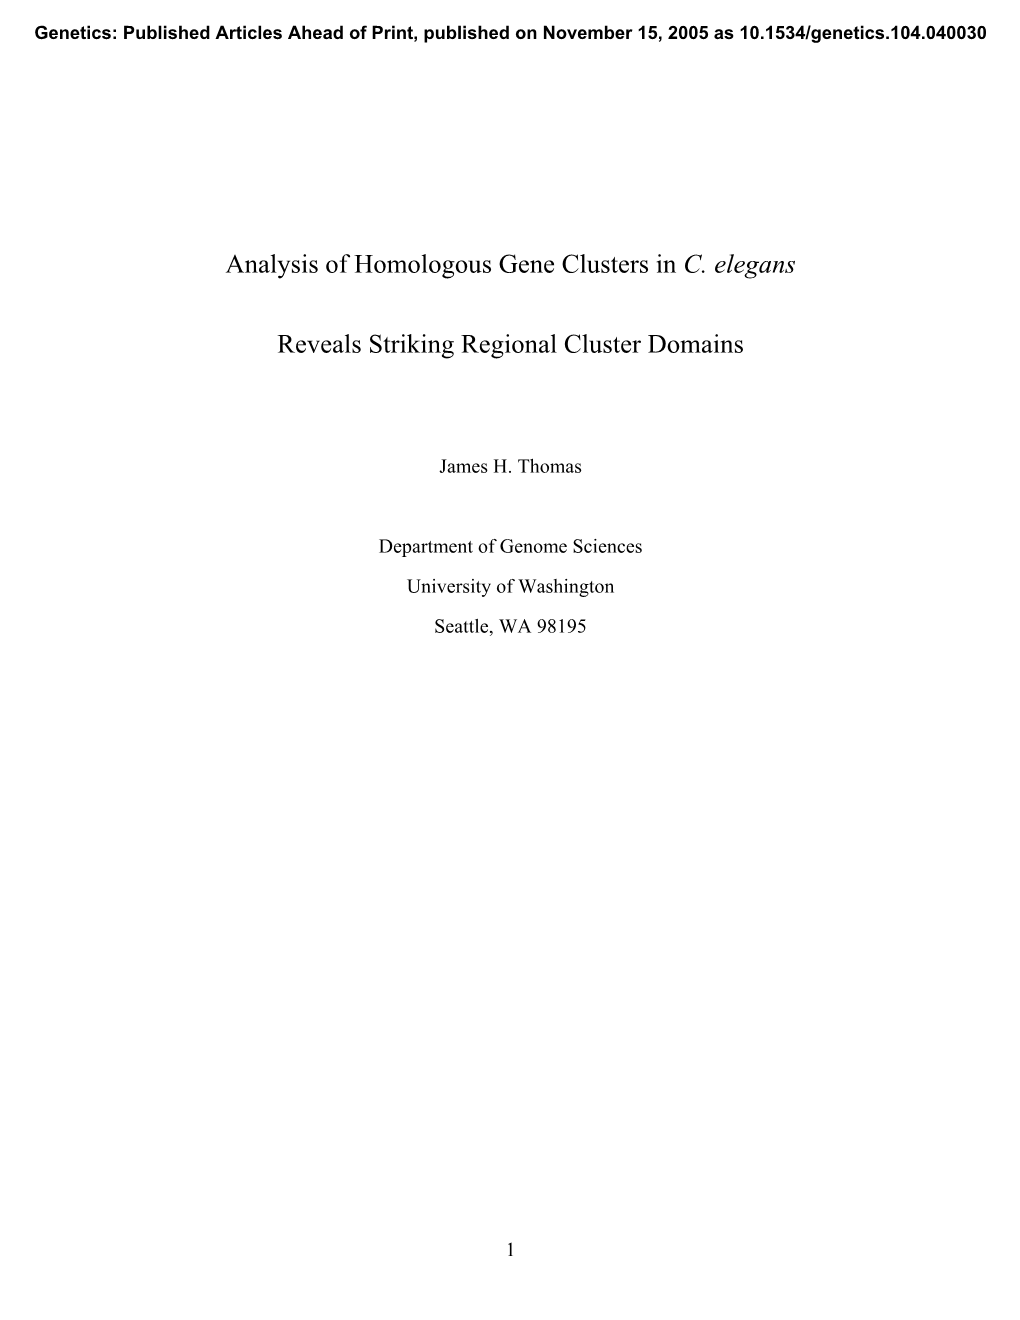 Analysis of Homologous Gene Clusters in C. Elegans